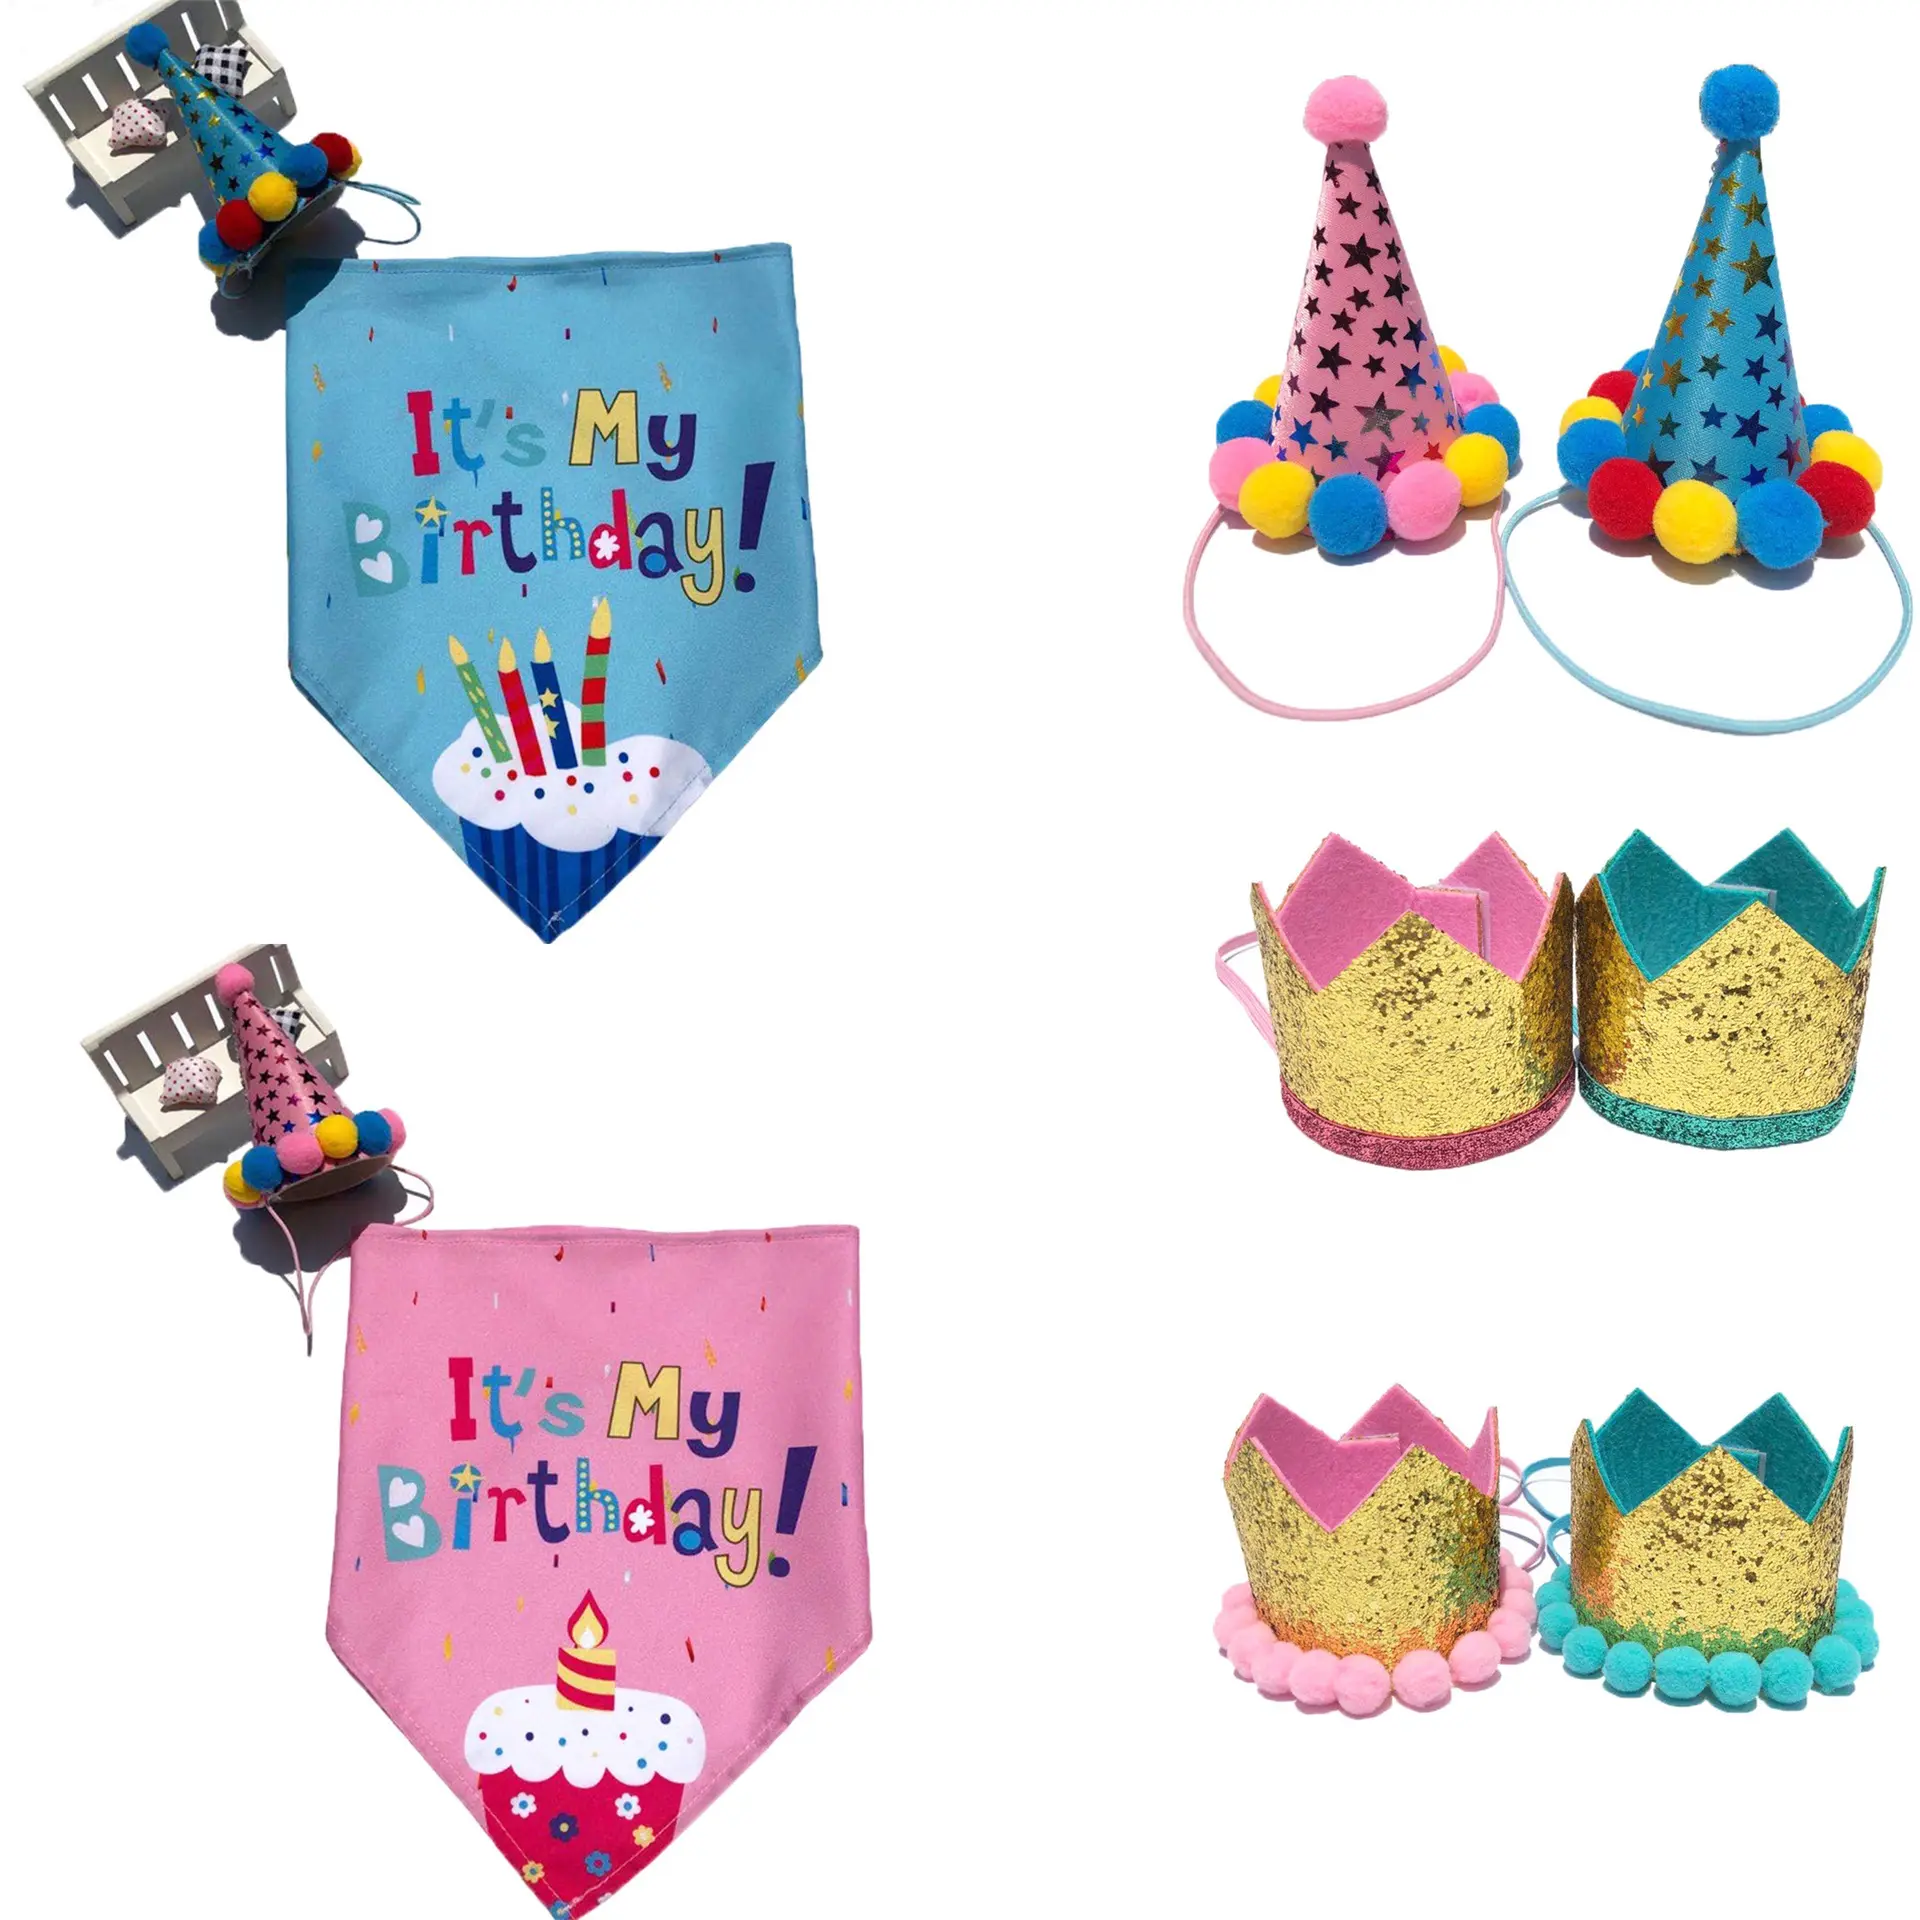 Sutiã para animais de estimação, lenço triangular personalizado para festa de aniversário, roupa ideal para presente de aniversário, bandana para cães, roupa de festa e festas